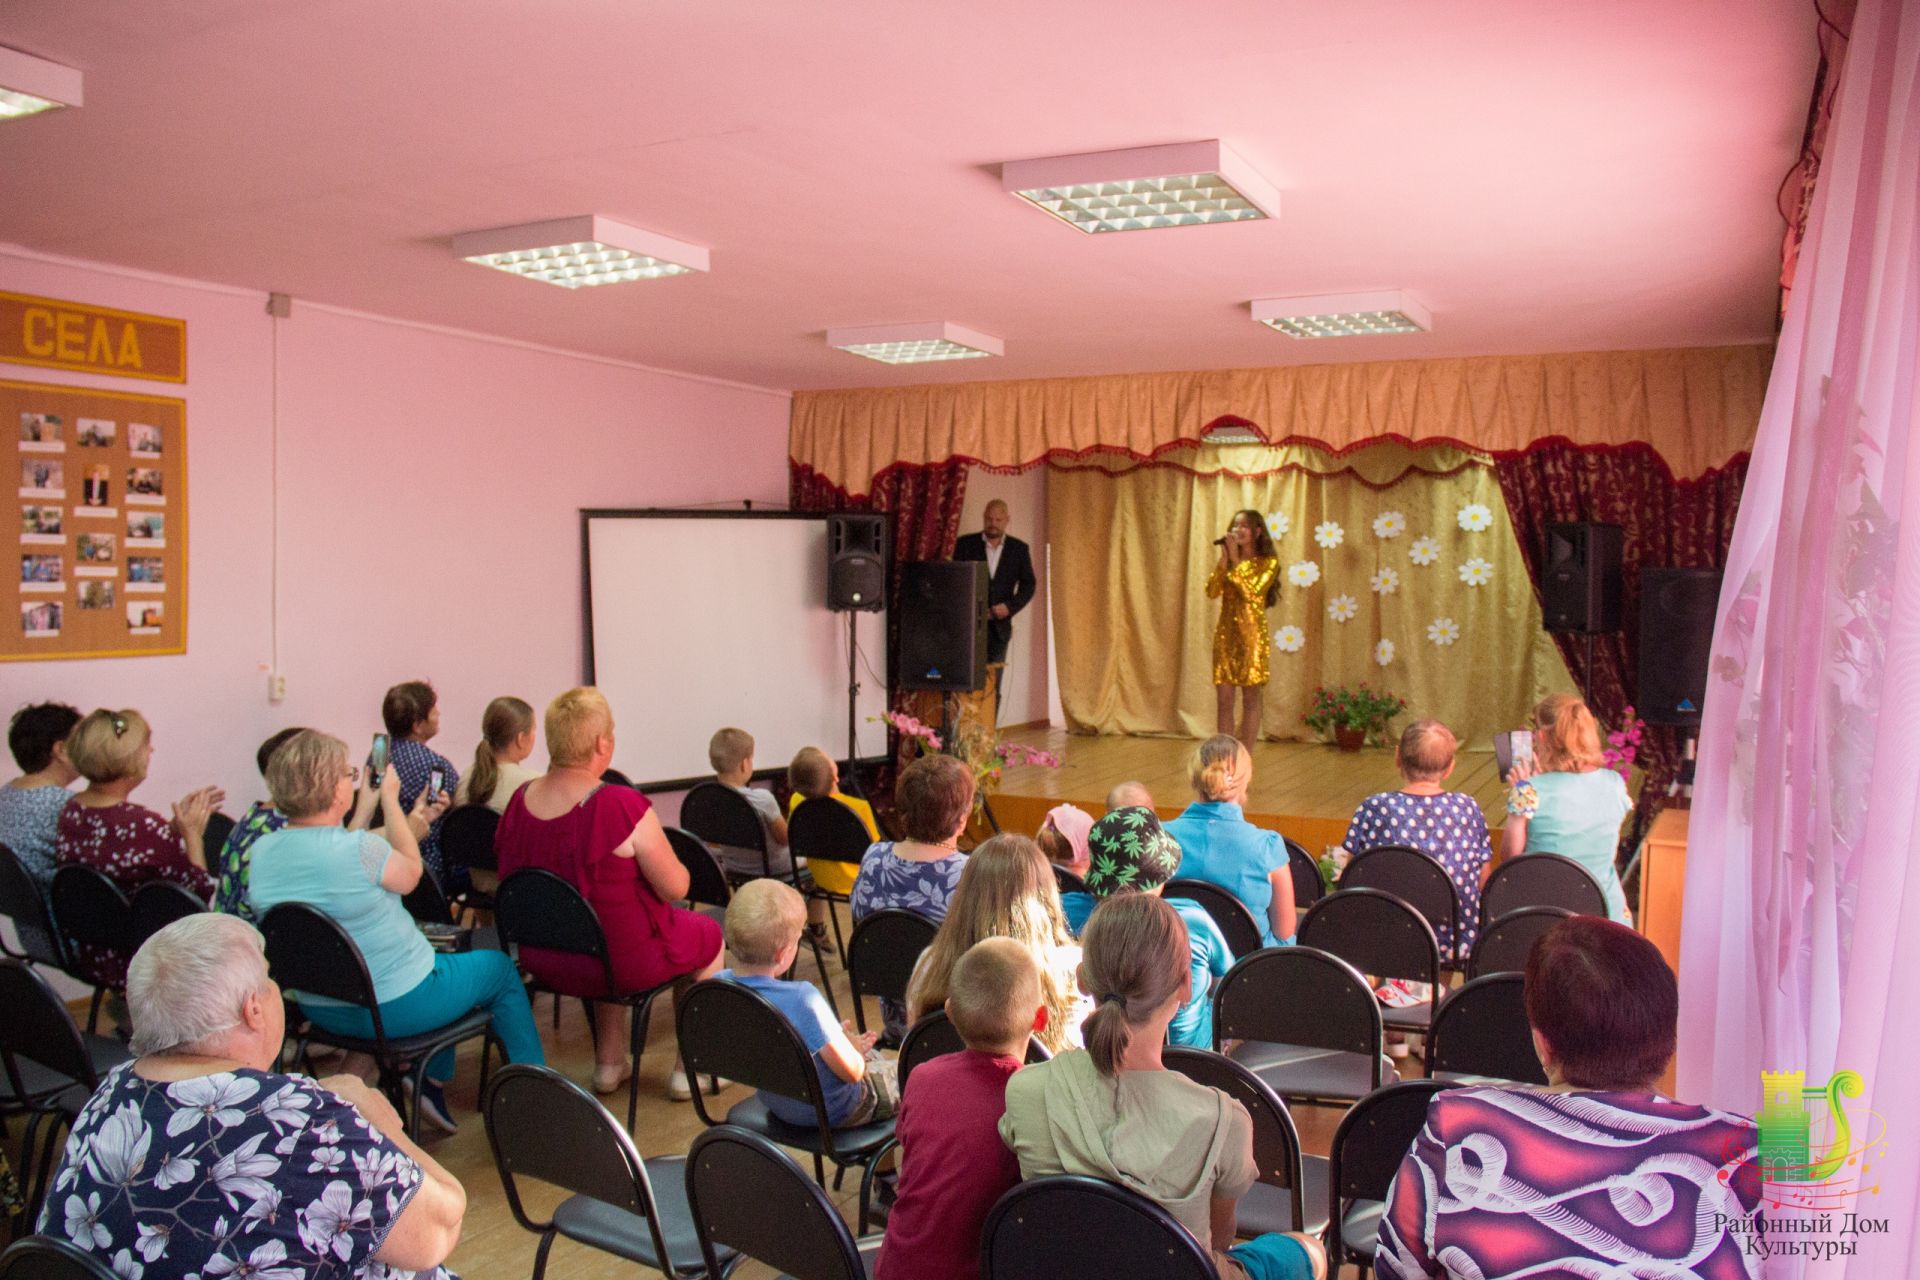 Артисты Спасского районного дома культуры проводят выездное турне с концертами